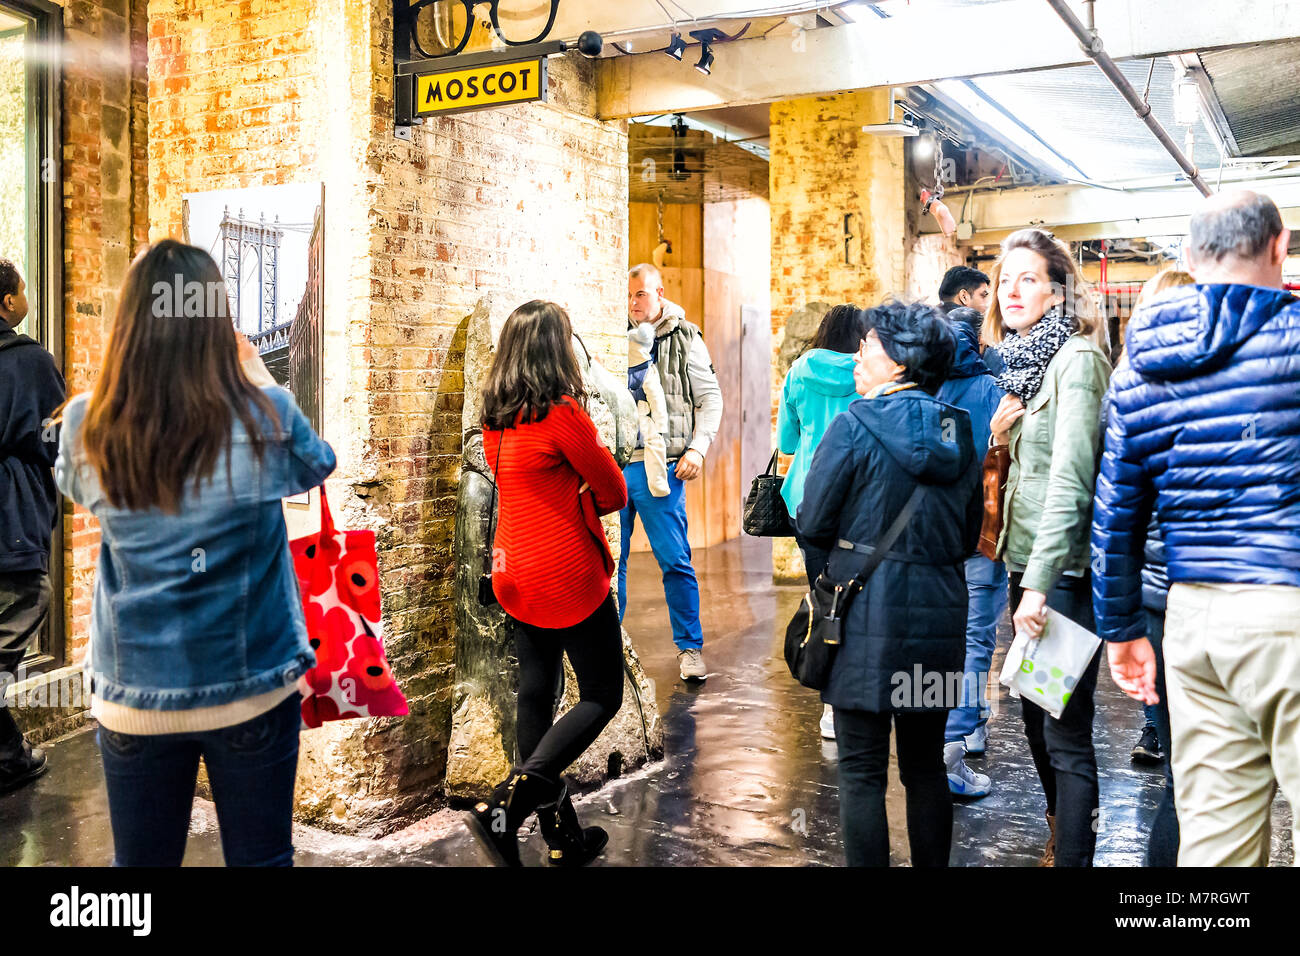 New York City, USA - 30. Oktober 2017: Markt essen Moscot Sonnenbrillen Shop Interior inside in der Innenstadt untere Chelsea Nachbarschaft Stadtteil Manhattan NY Stockfoto